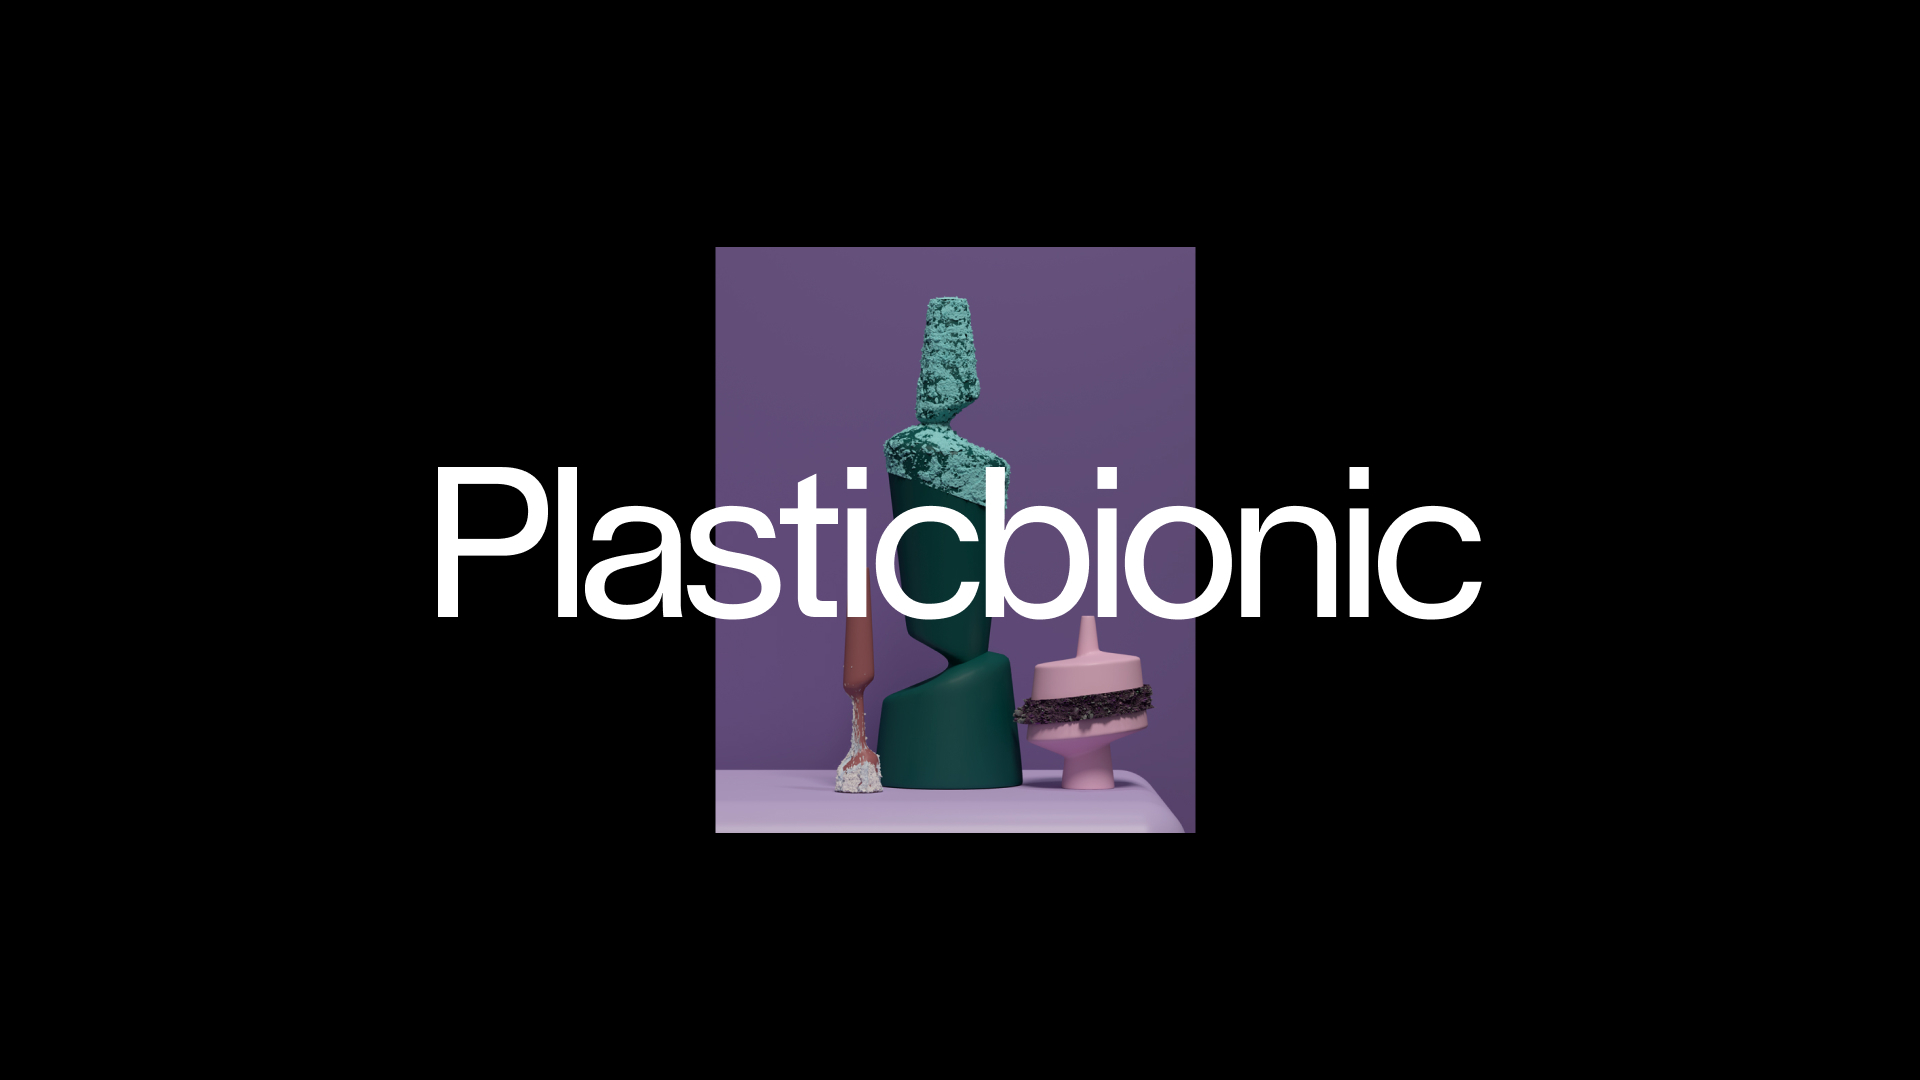 (c) Plasticbionic.com